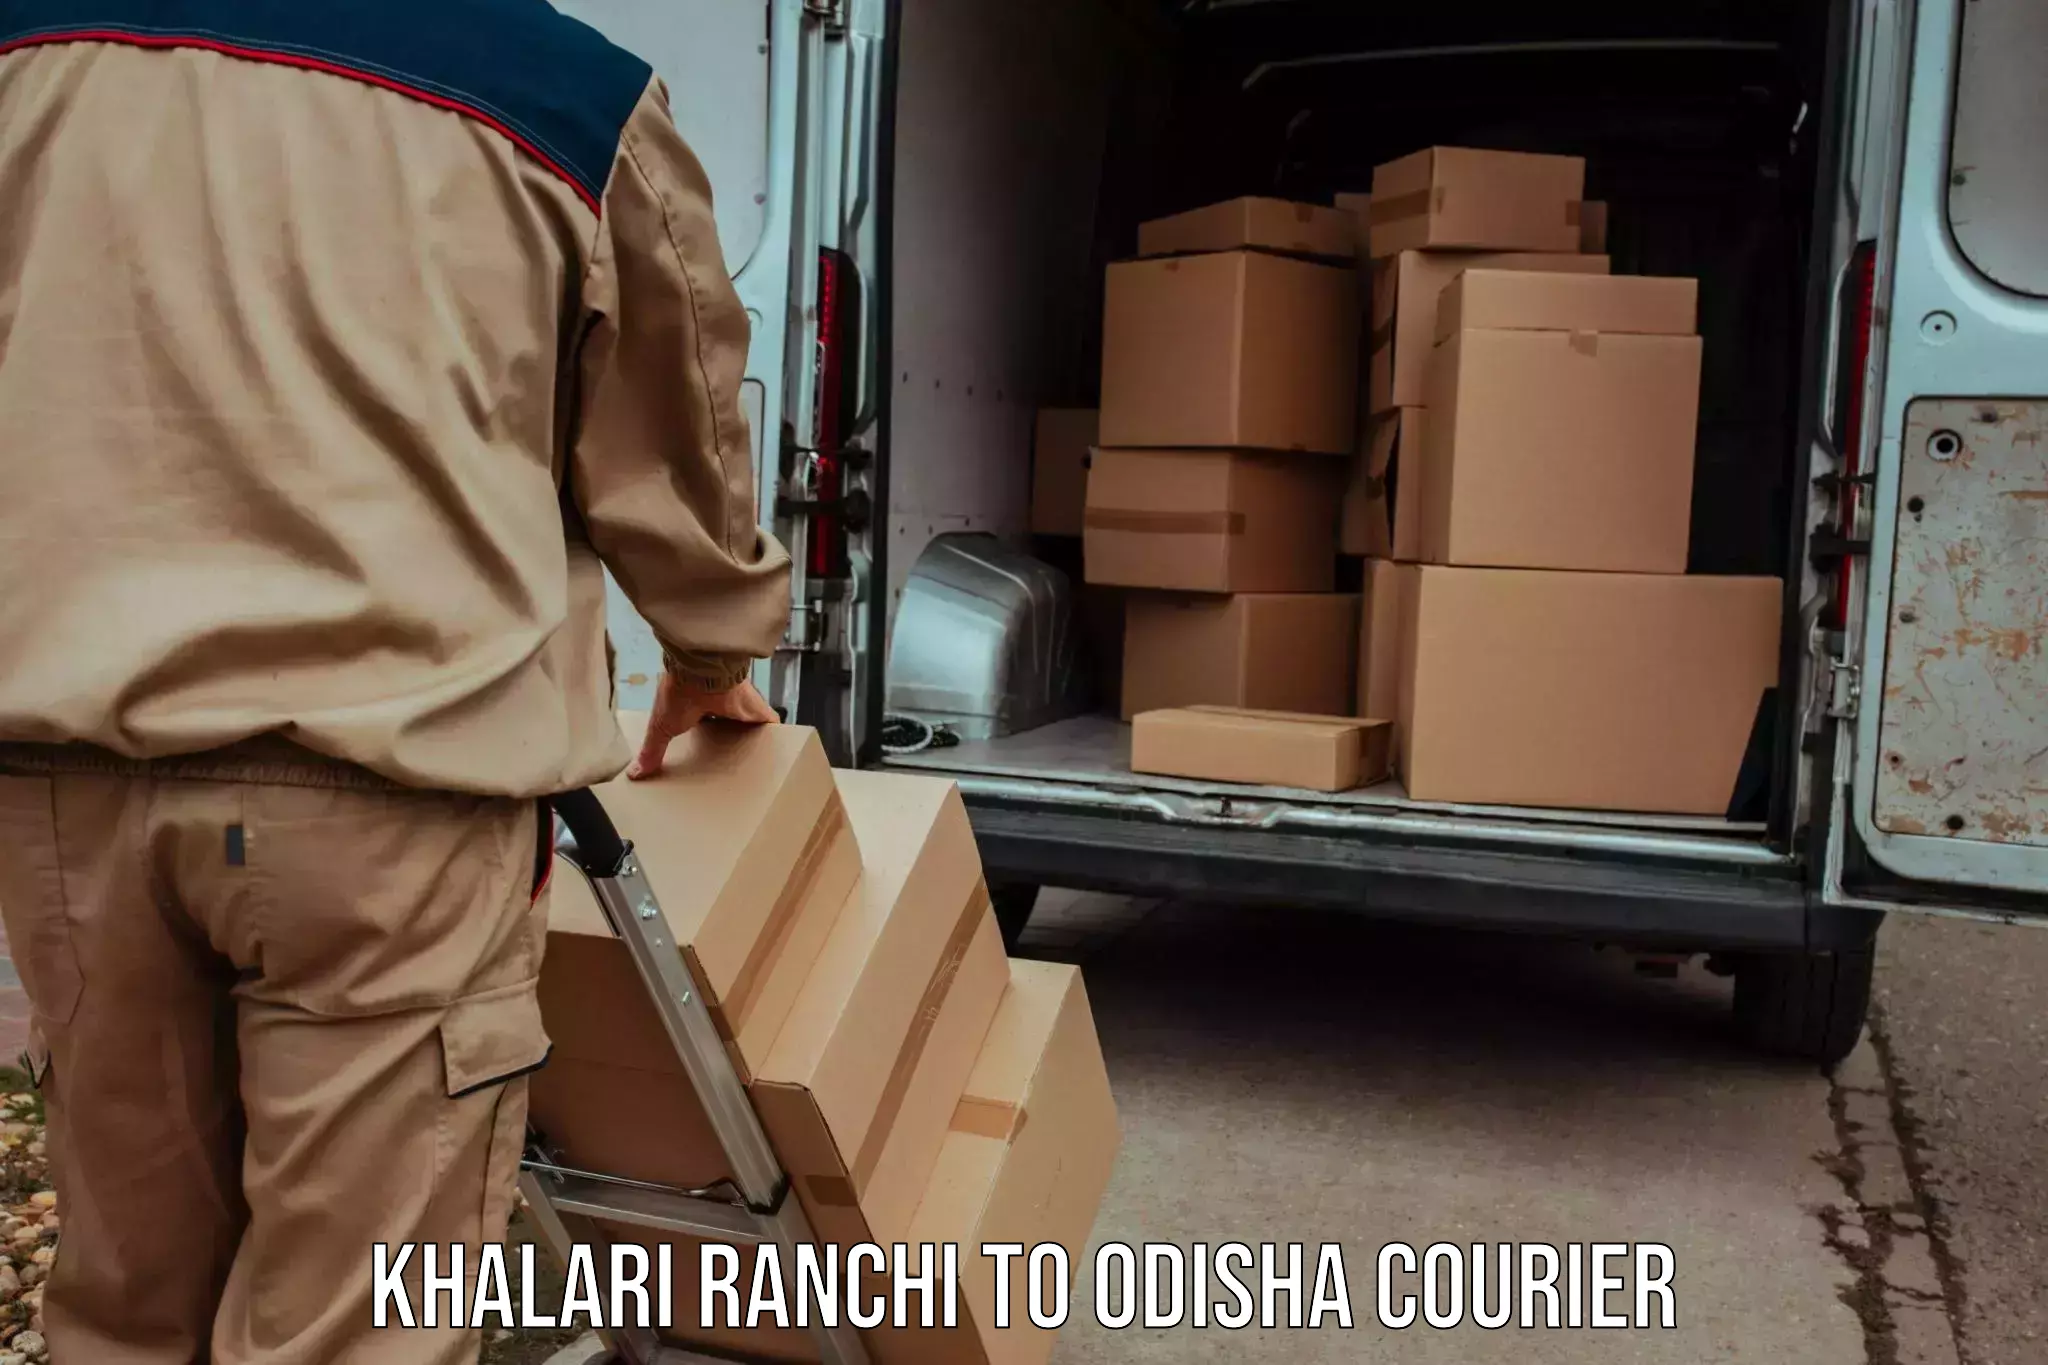 24/7 courier service Khalari Ranchi to Mahakalapada